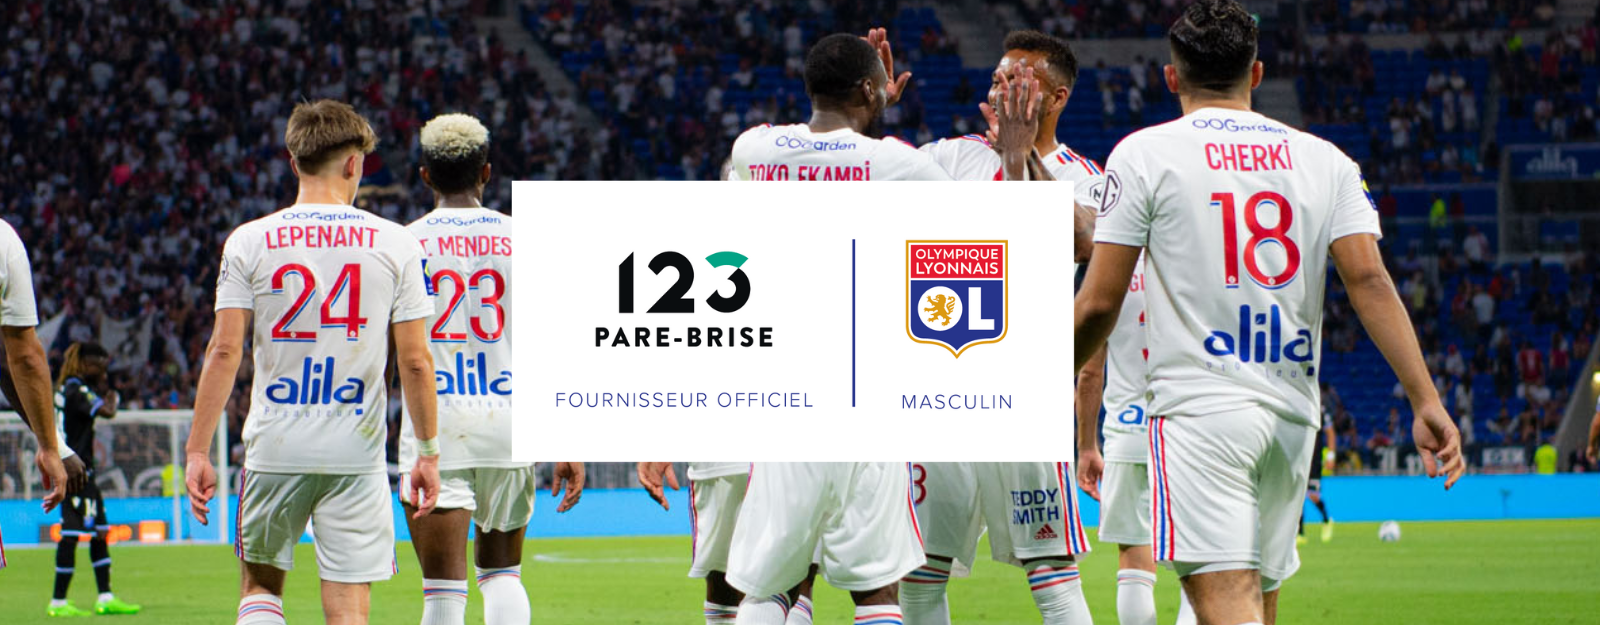 123 Pare-Brise devient Fournisseur de l’Olympique Lyonnais